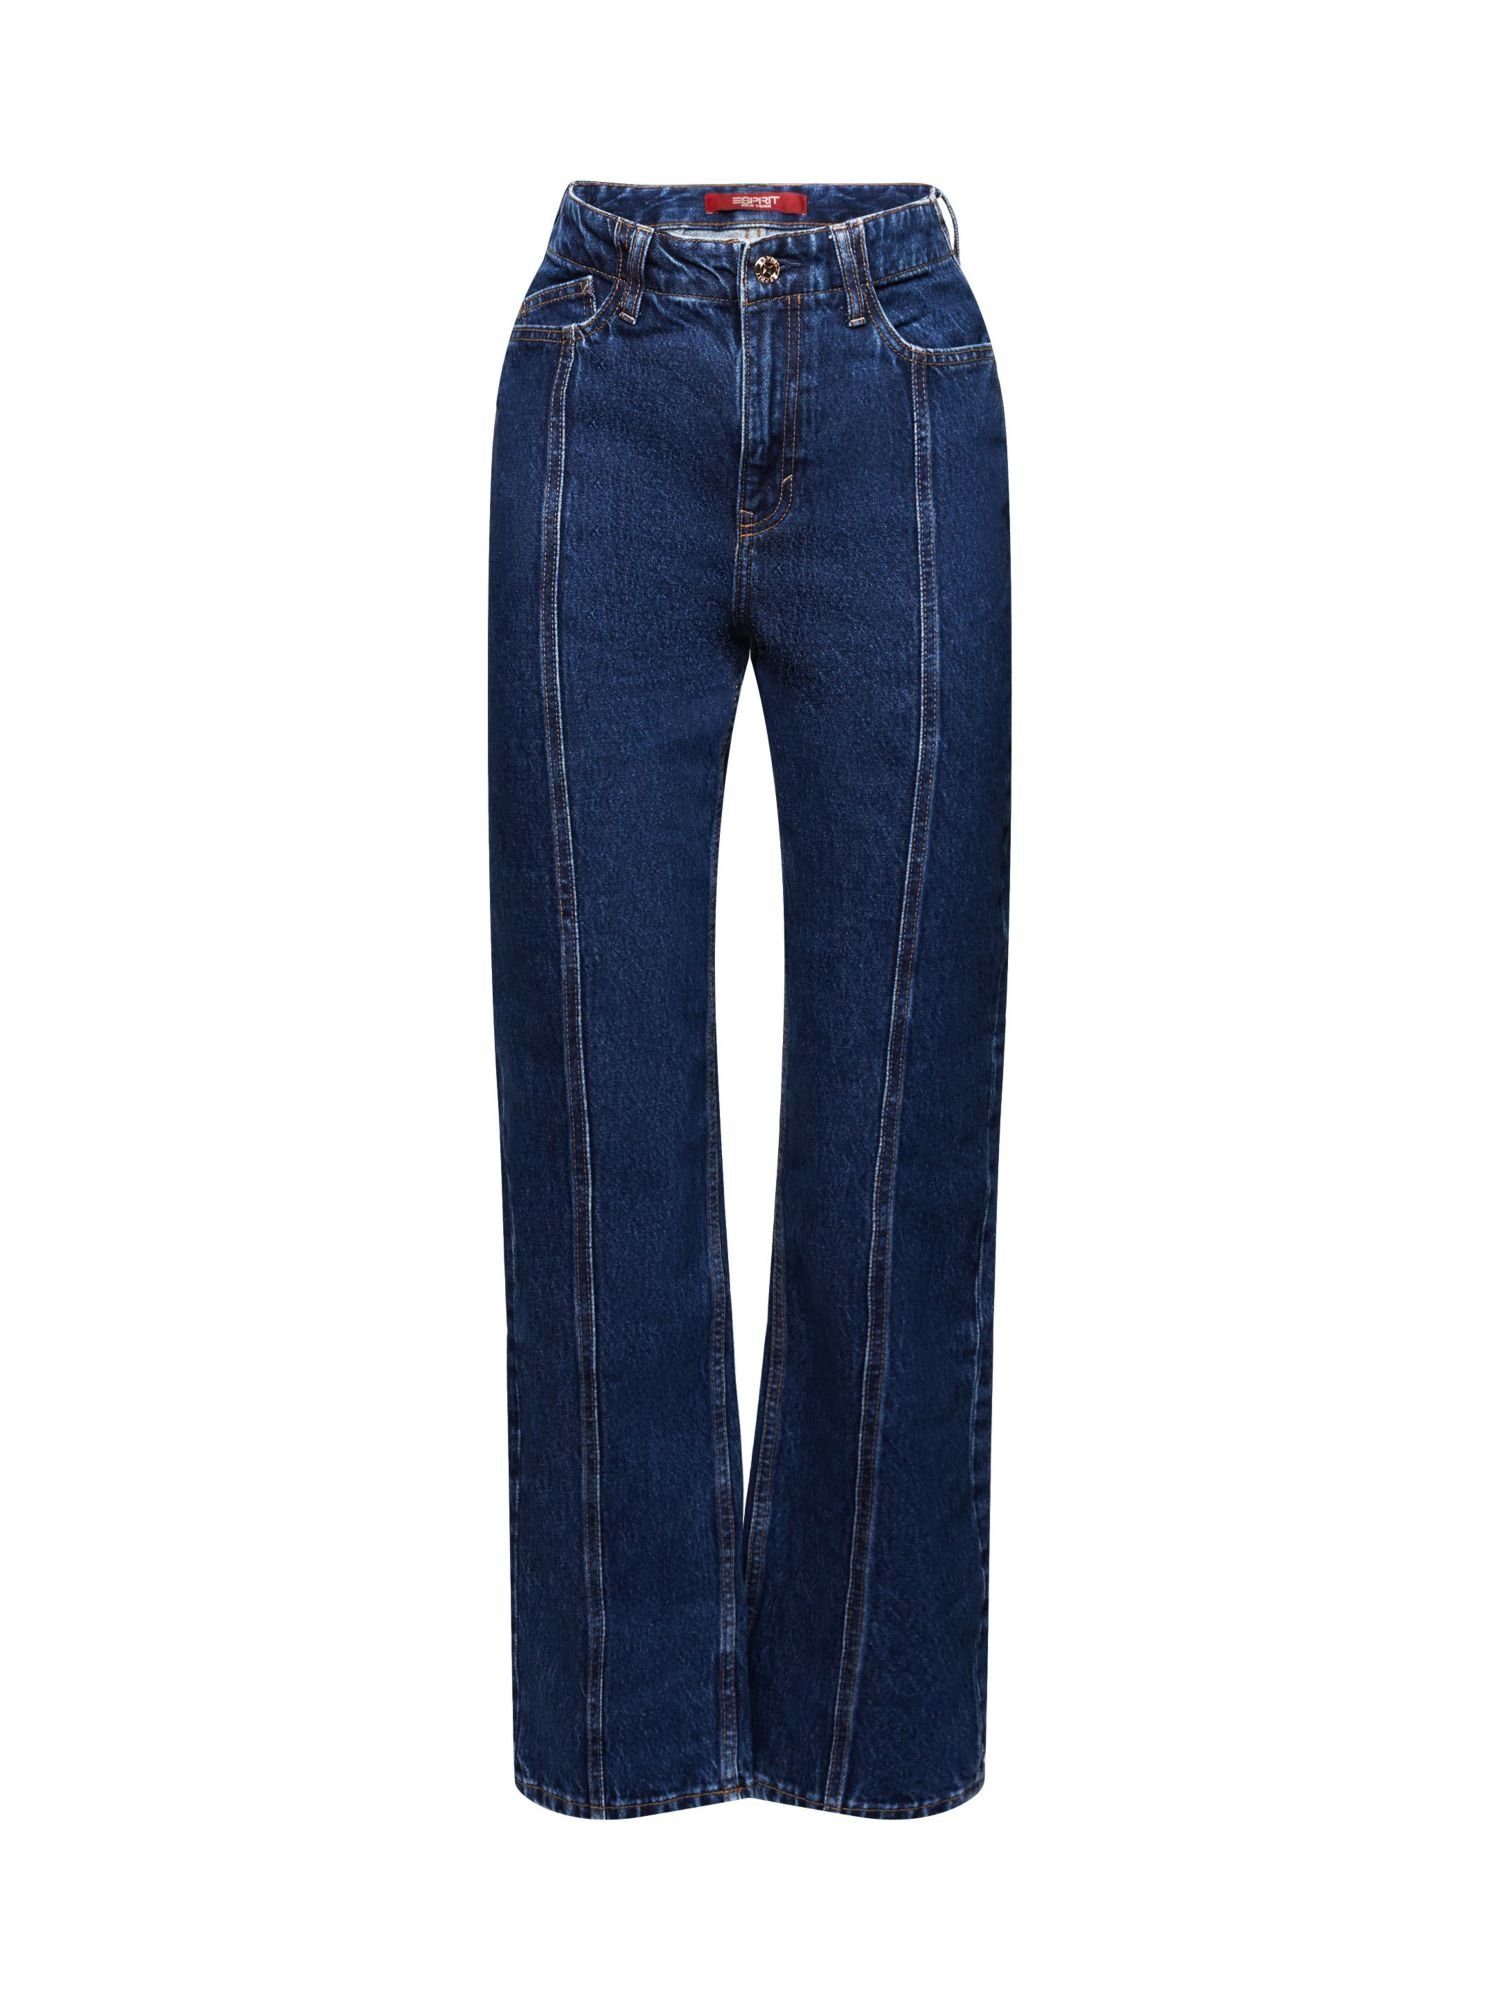 Esprit Bequeme Jeans Jeans mit gerader Passform und hohem Bund